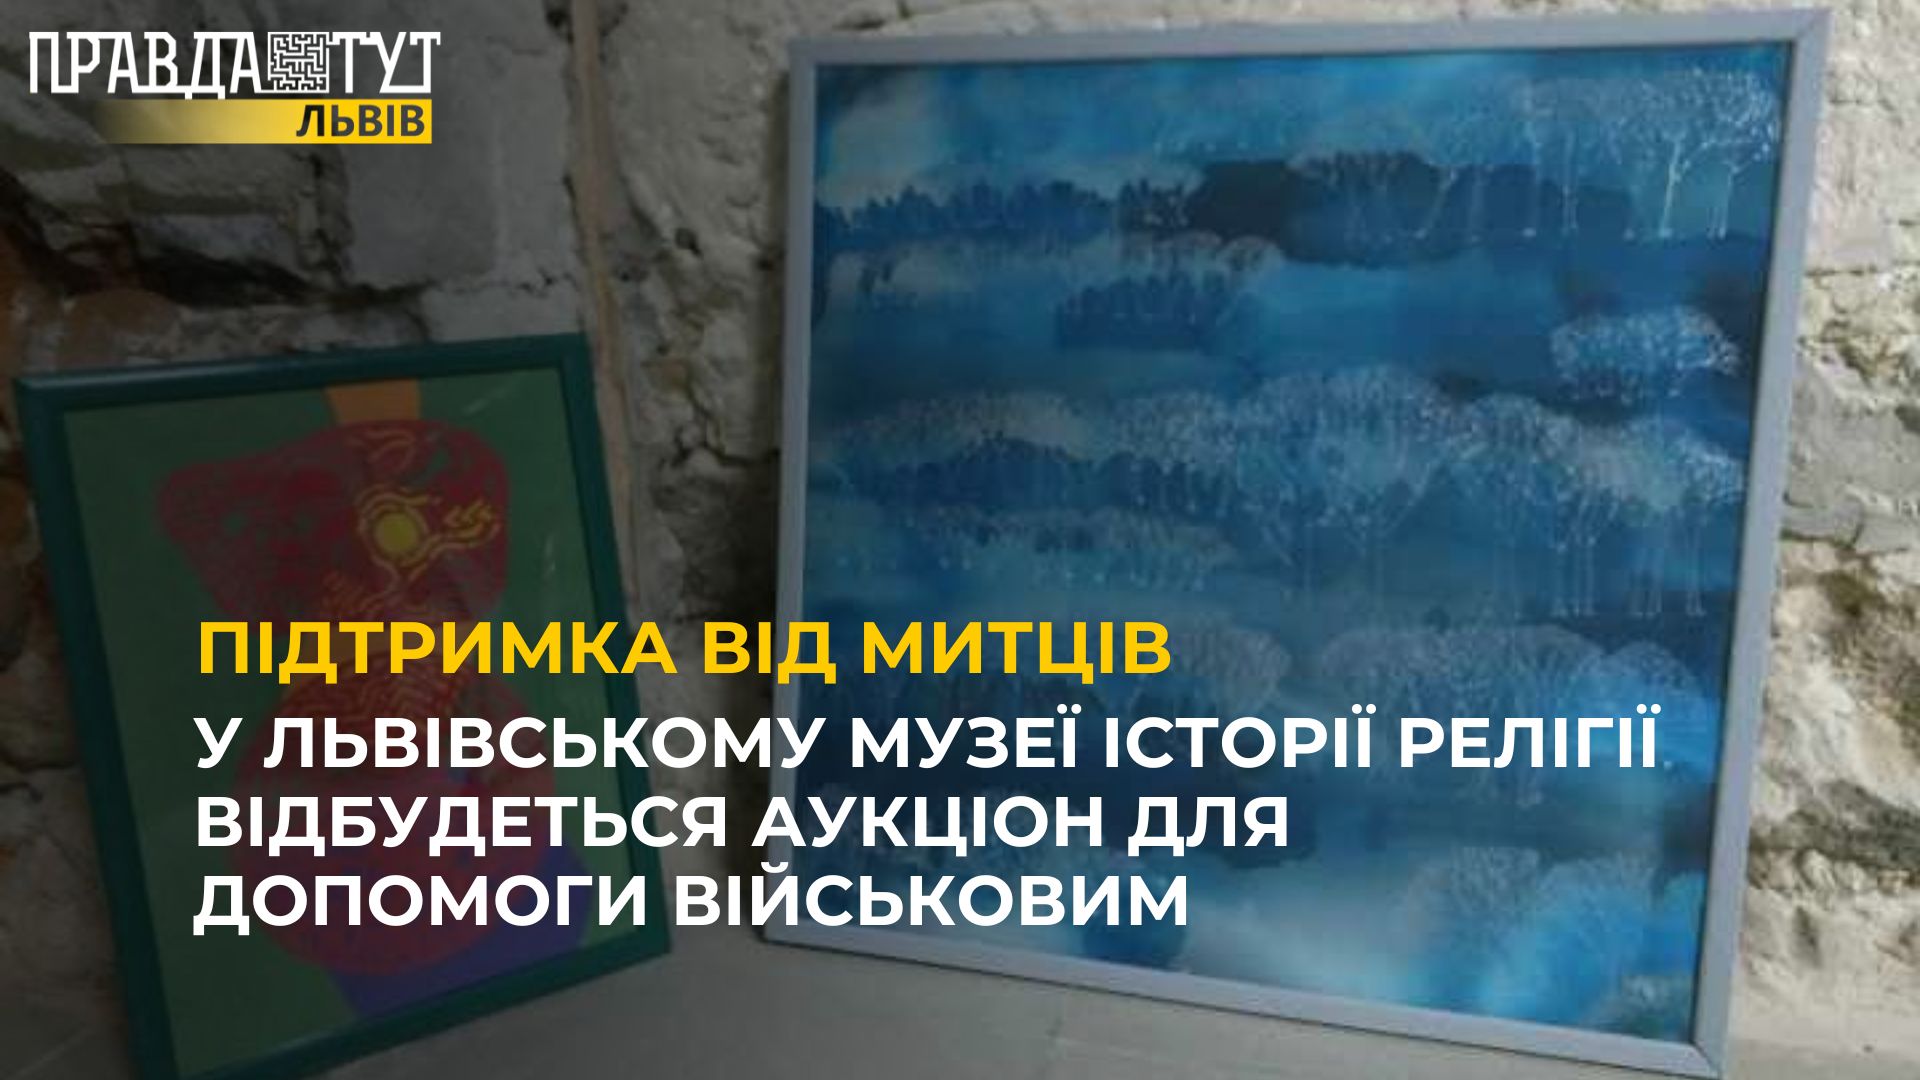 У Львівському музеї історії релігії відбудеться аукціон для допомоги військовим